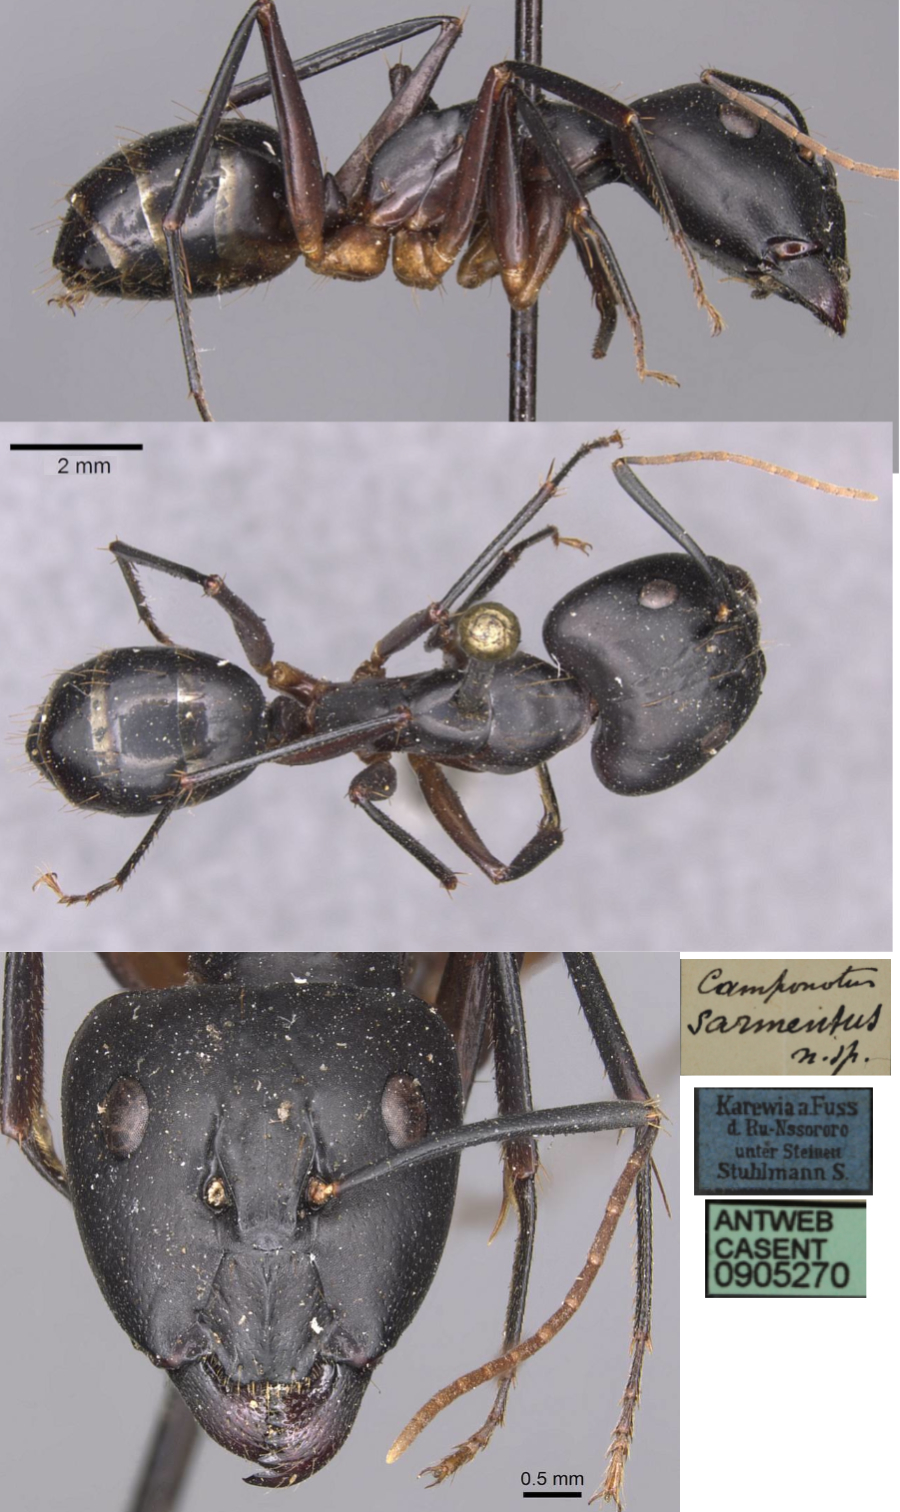 Camponotus sarmentus major